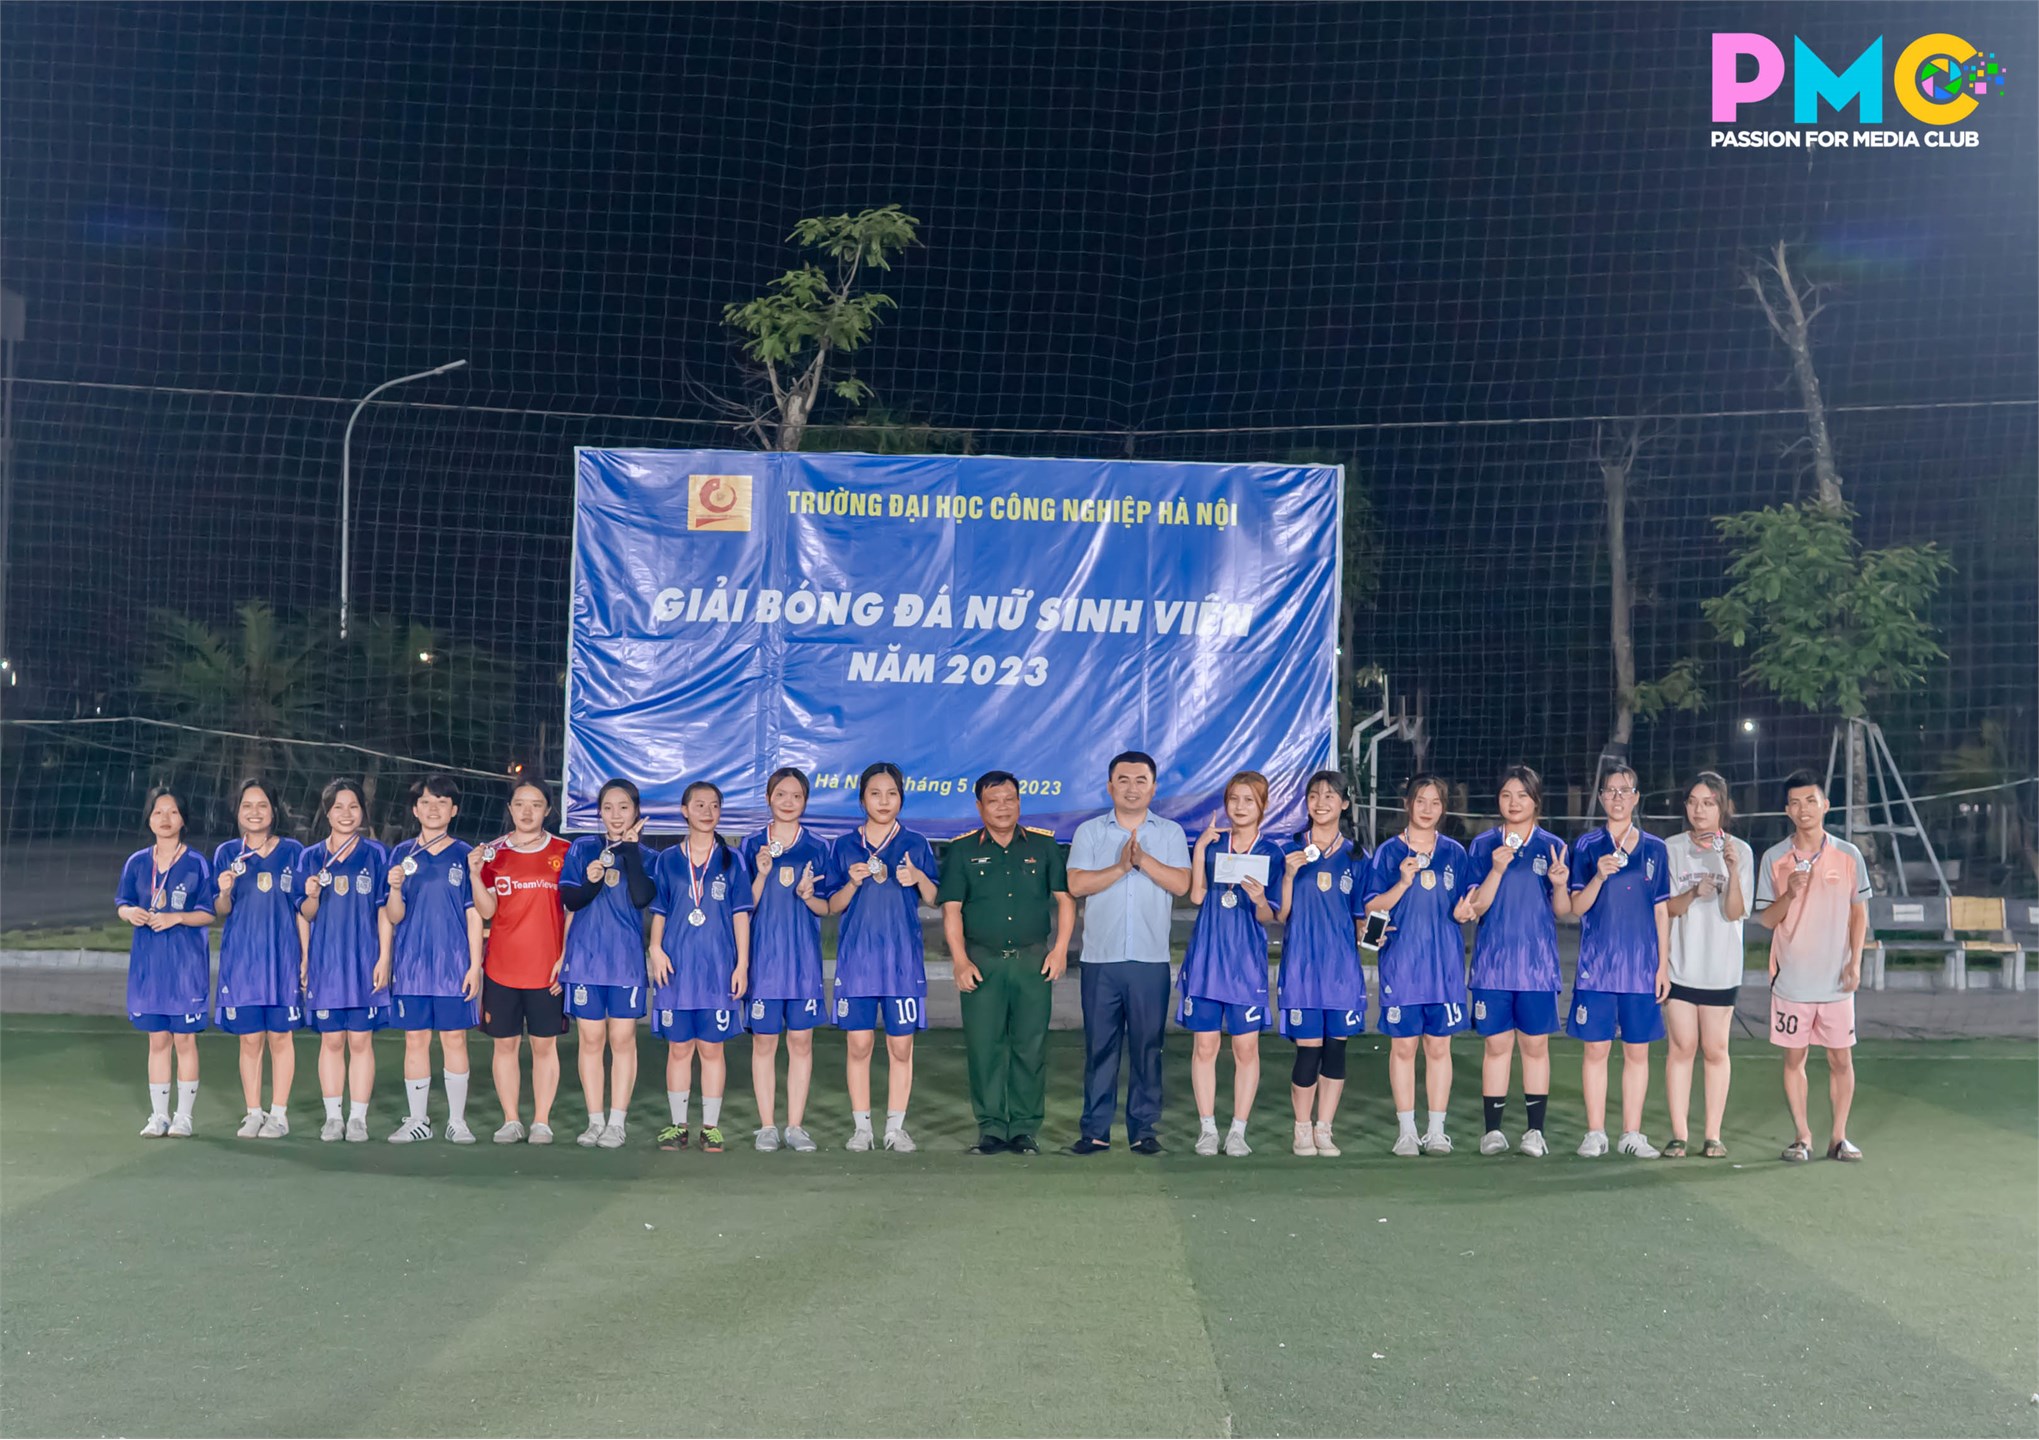 Sinh viên Kiểm toán 2 Vô địch chung kết giải bóng đá nữ sinh viên năm 2023.